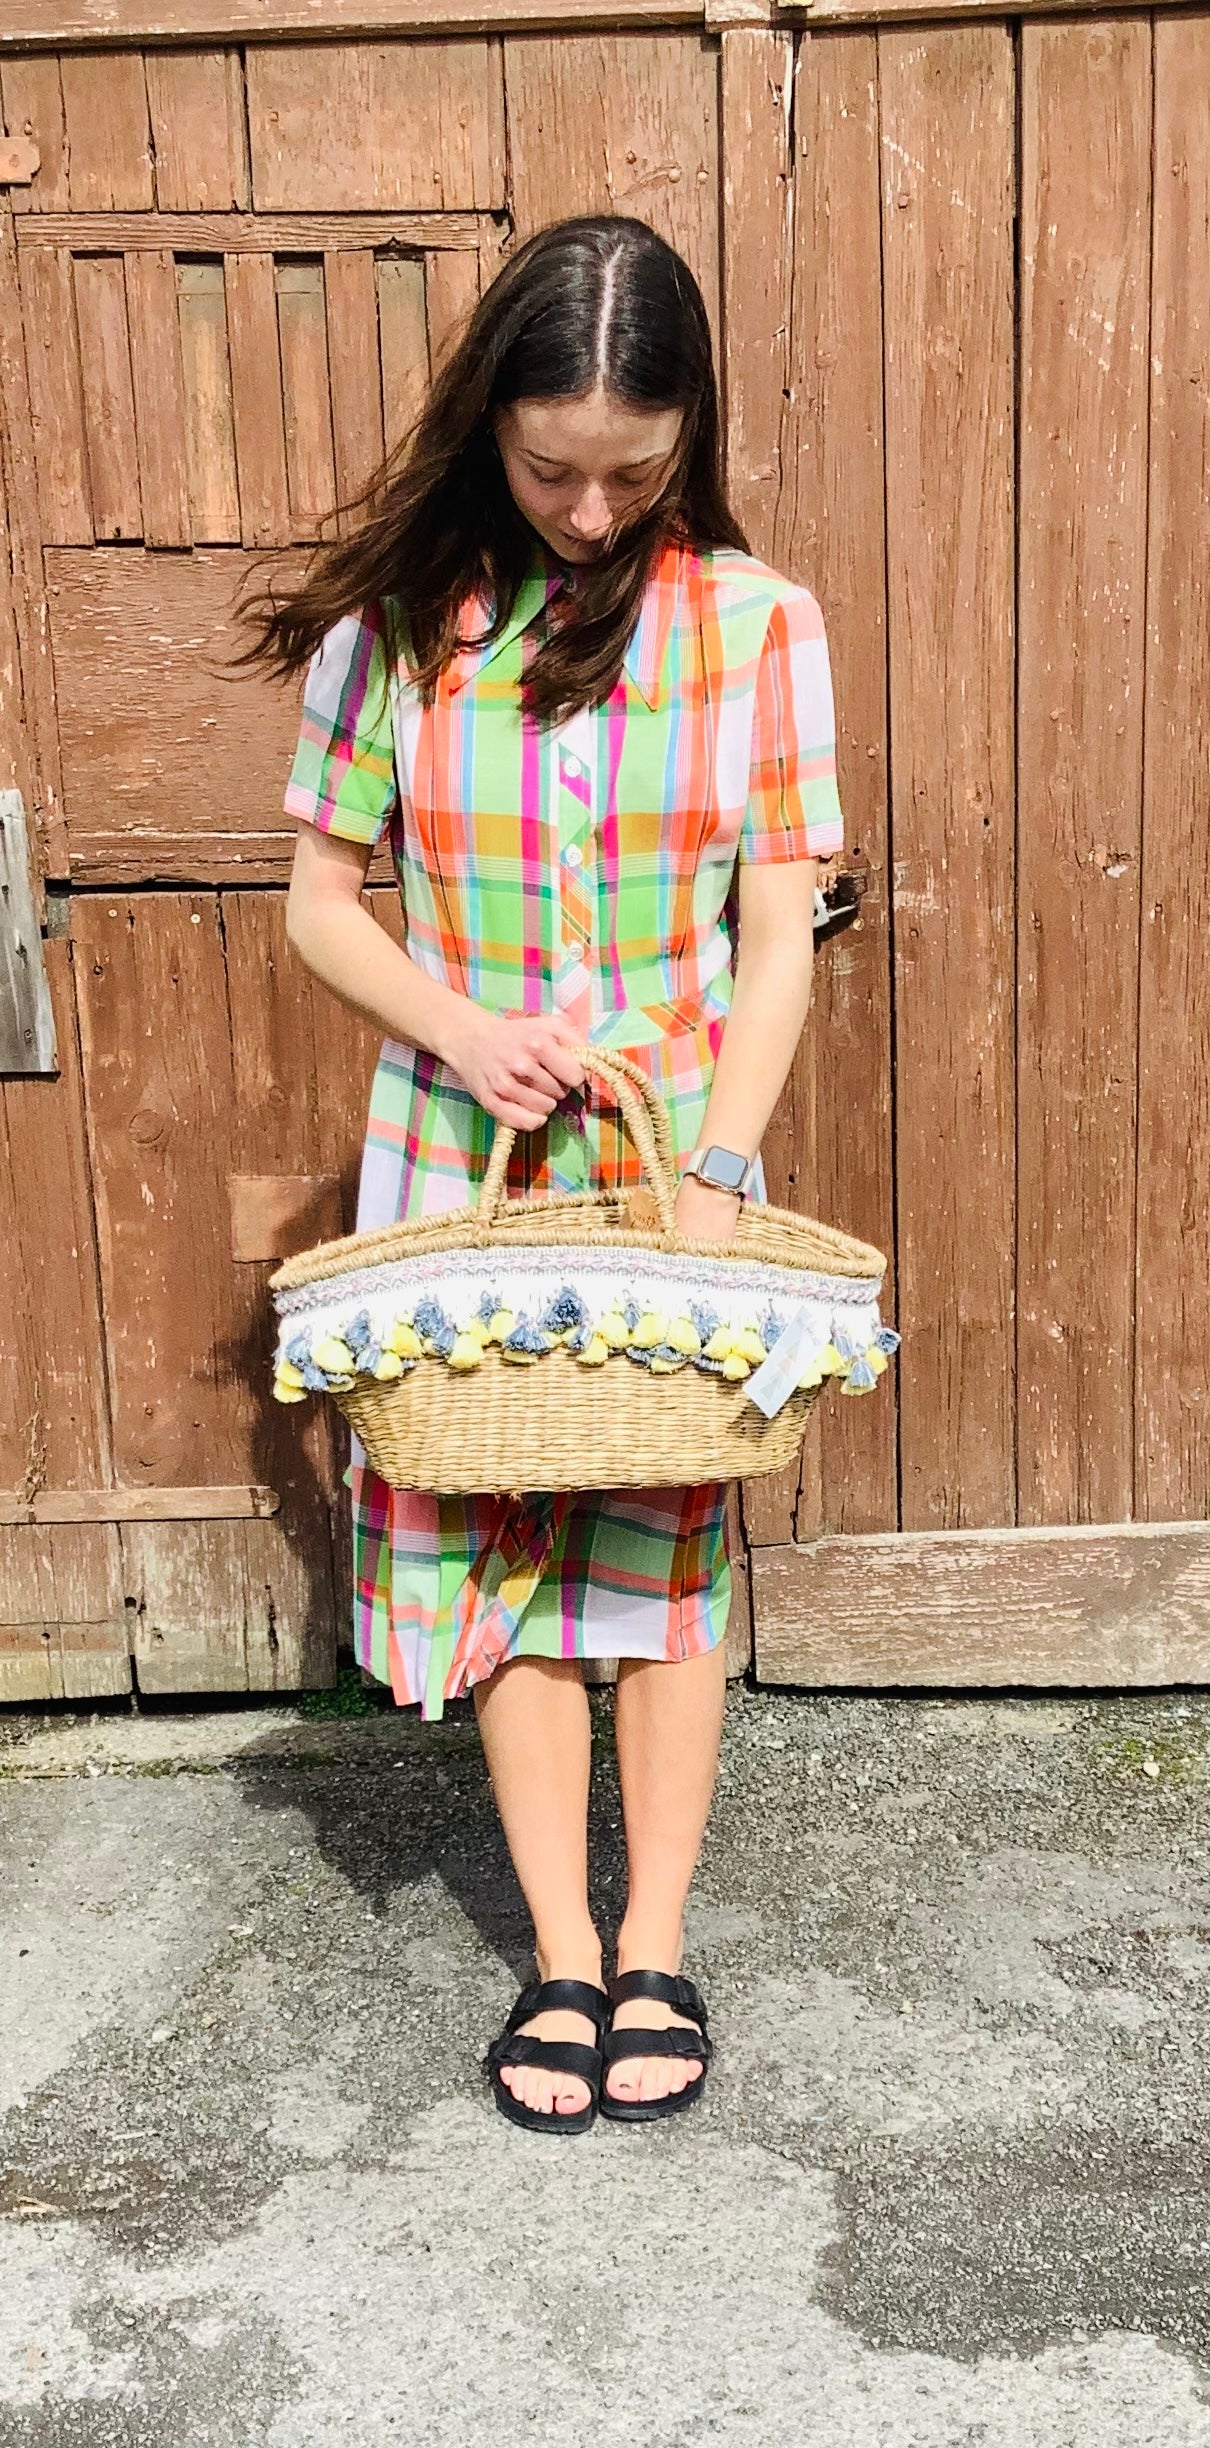 Market basket with vintage tassle trim